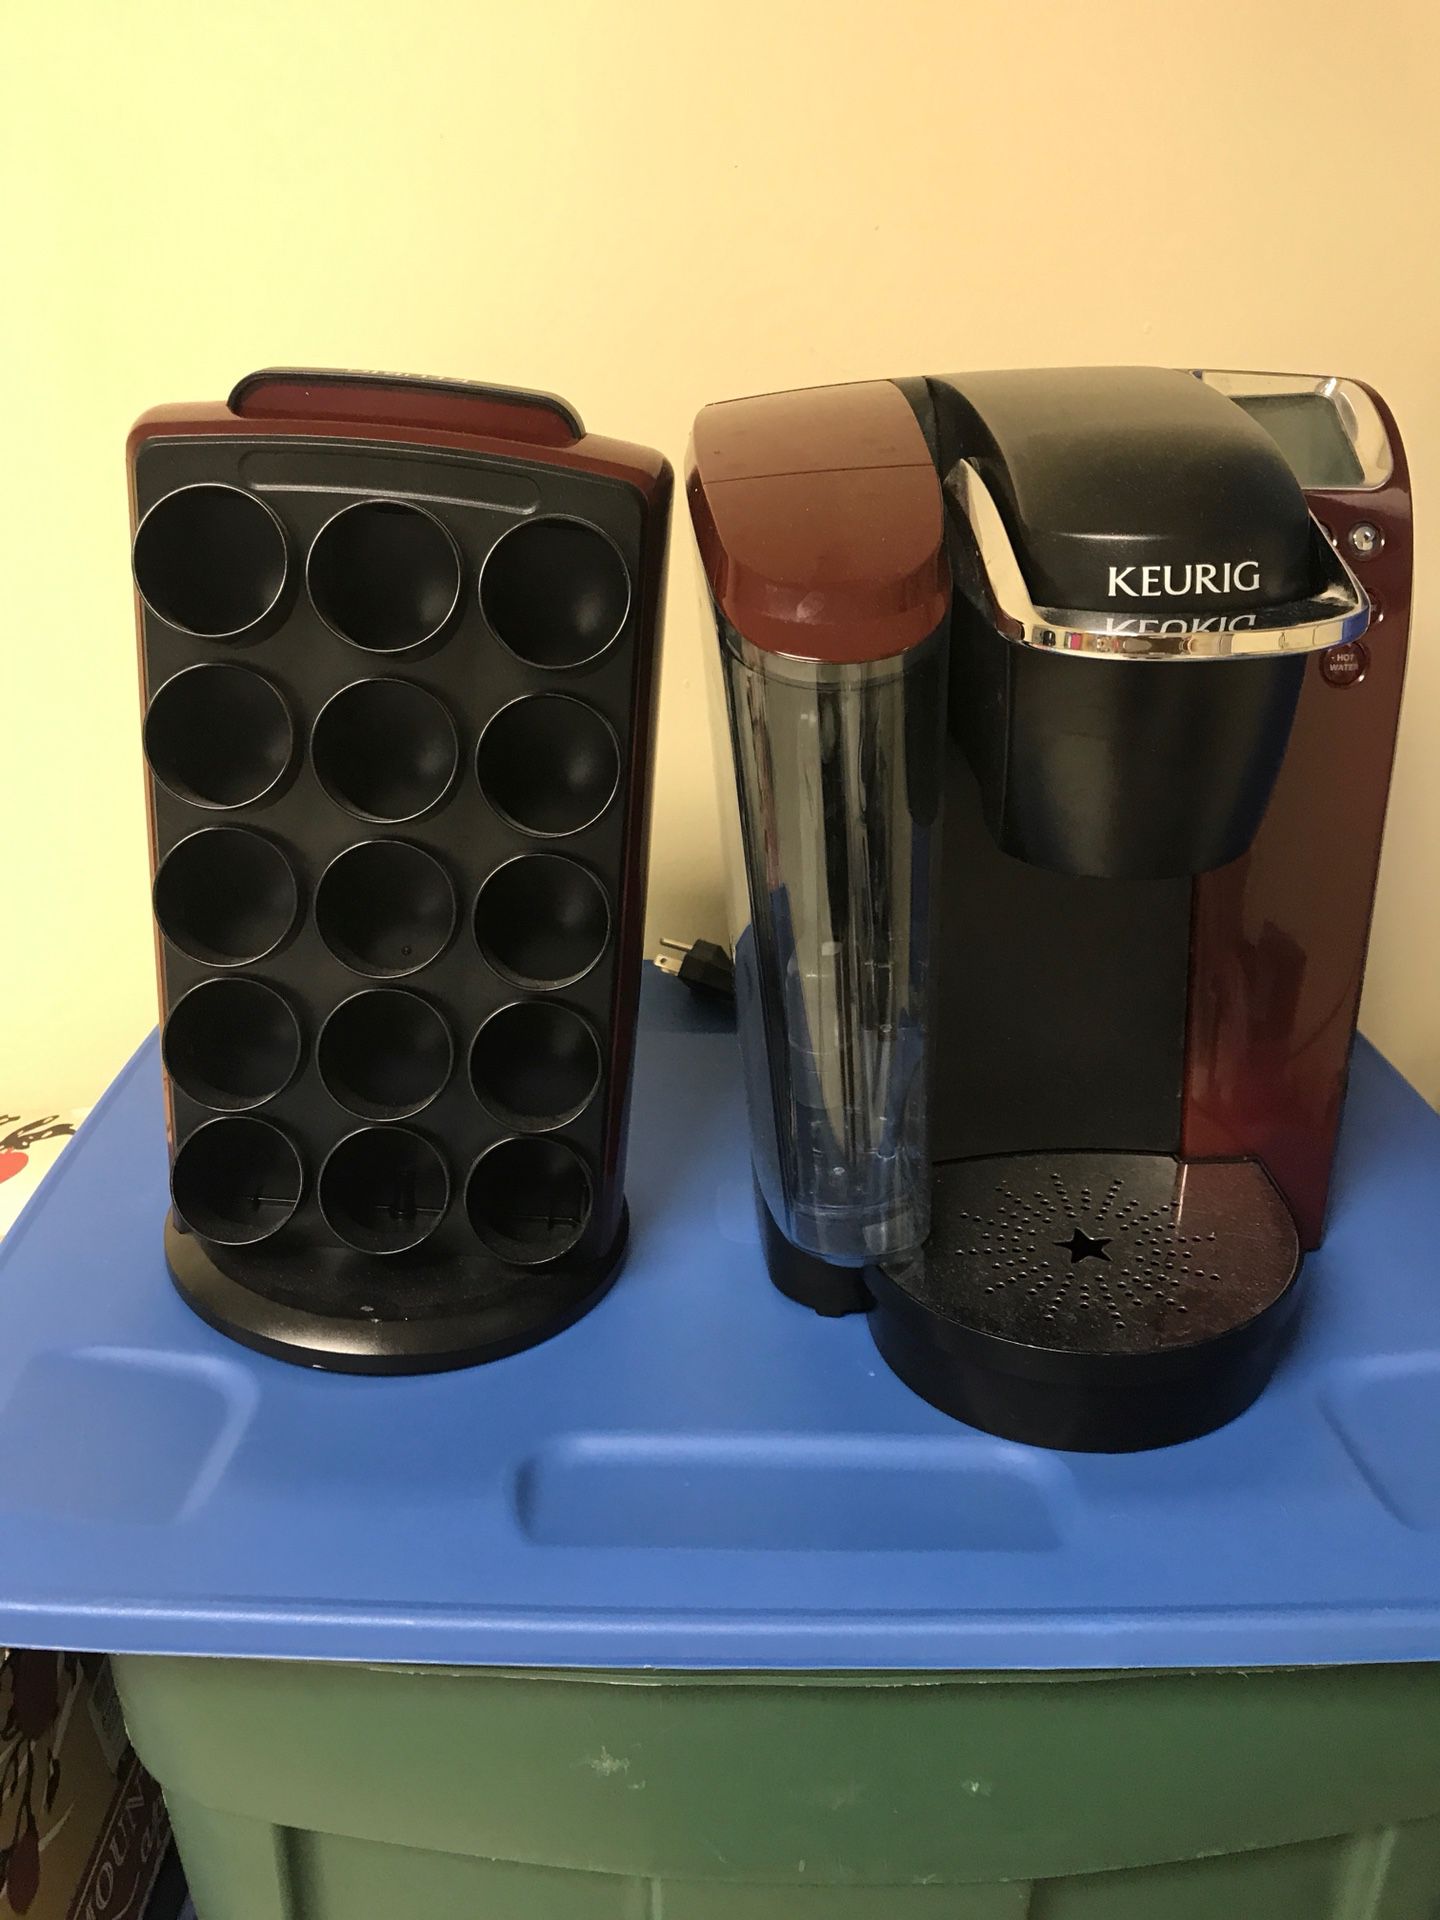 Keurig coffee and hot water maker!